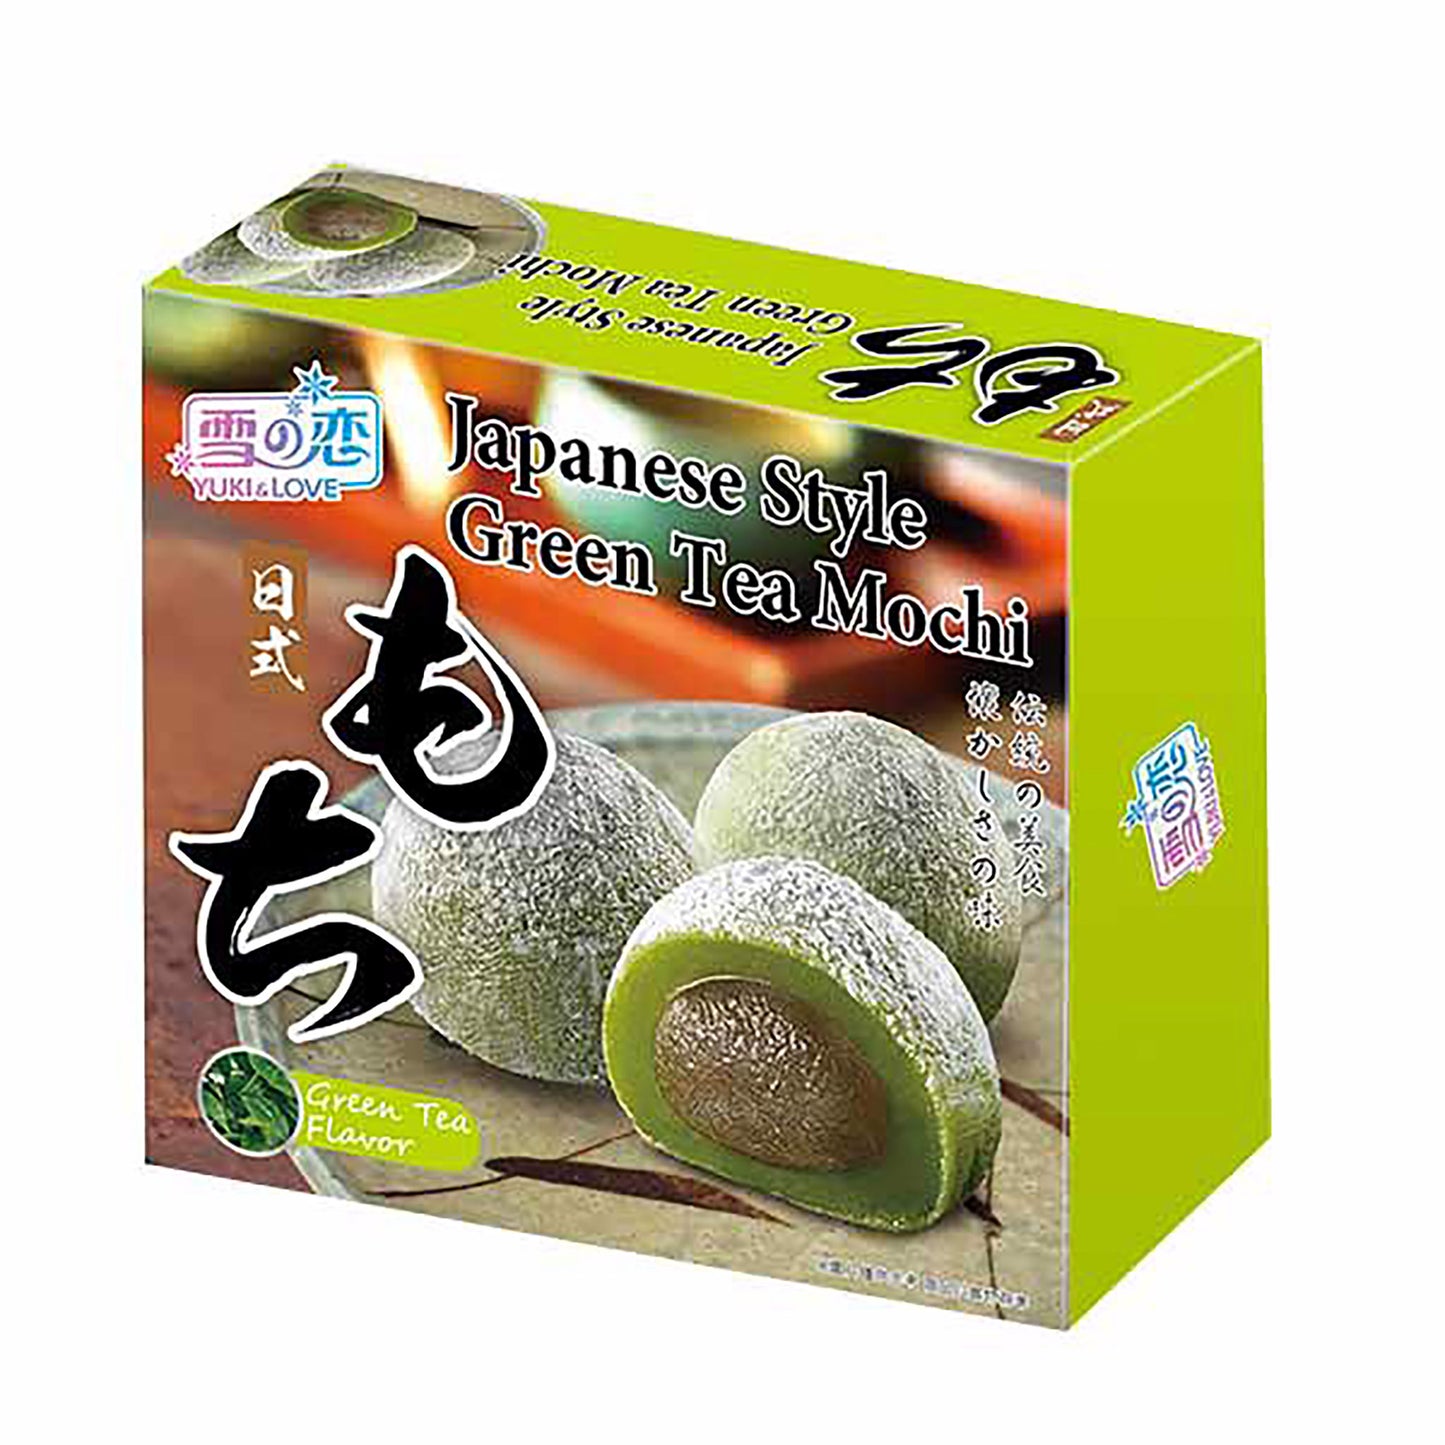 日式绿茶麻薯 (140gm*24)